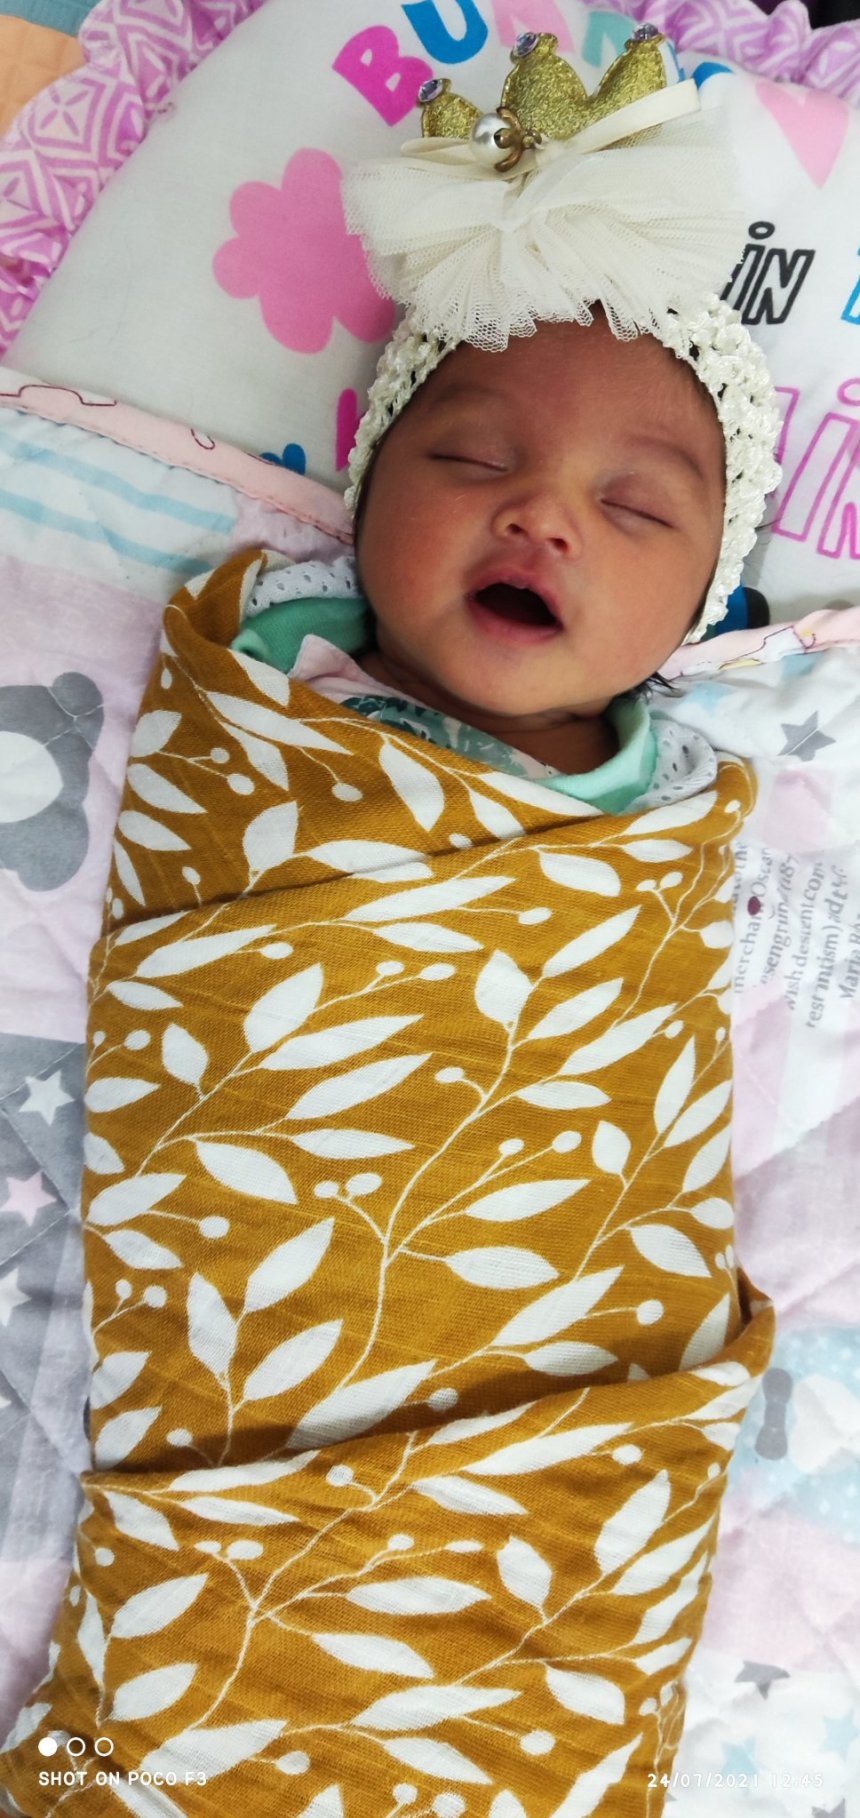 Activity report for Newborn Sleep in Wachanga!